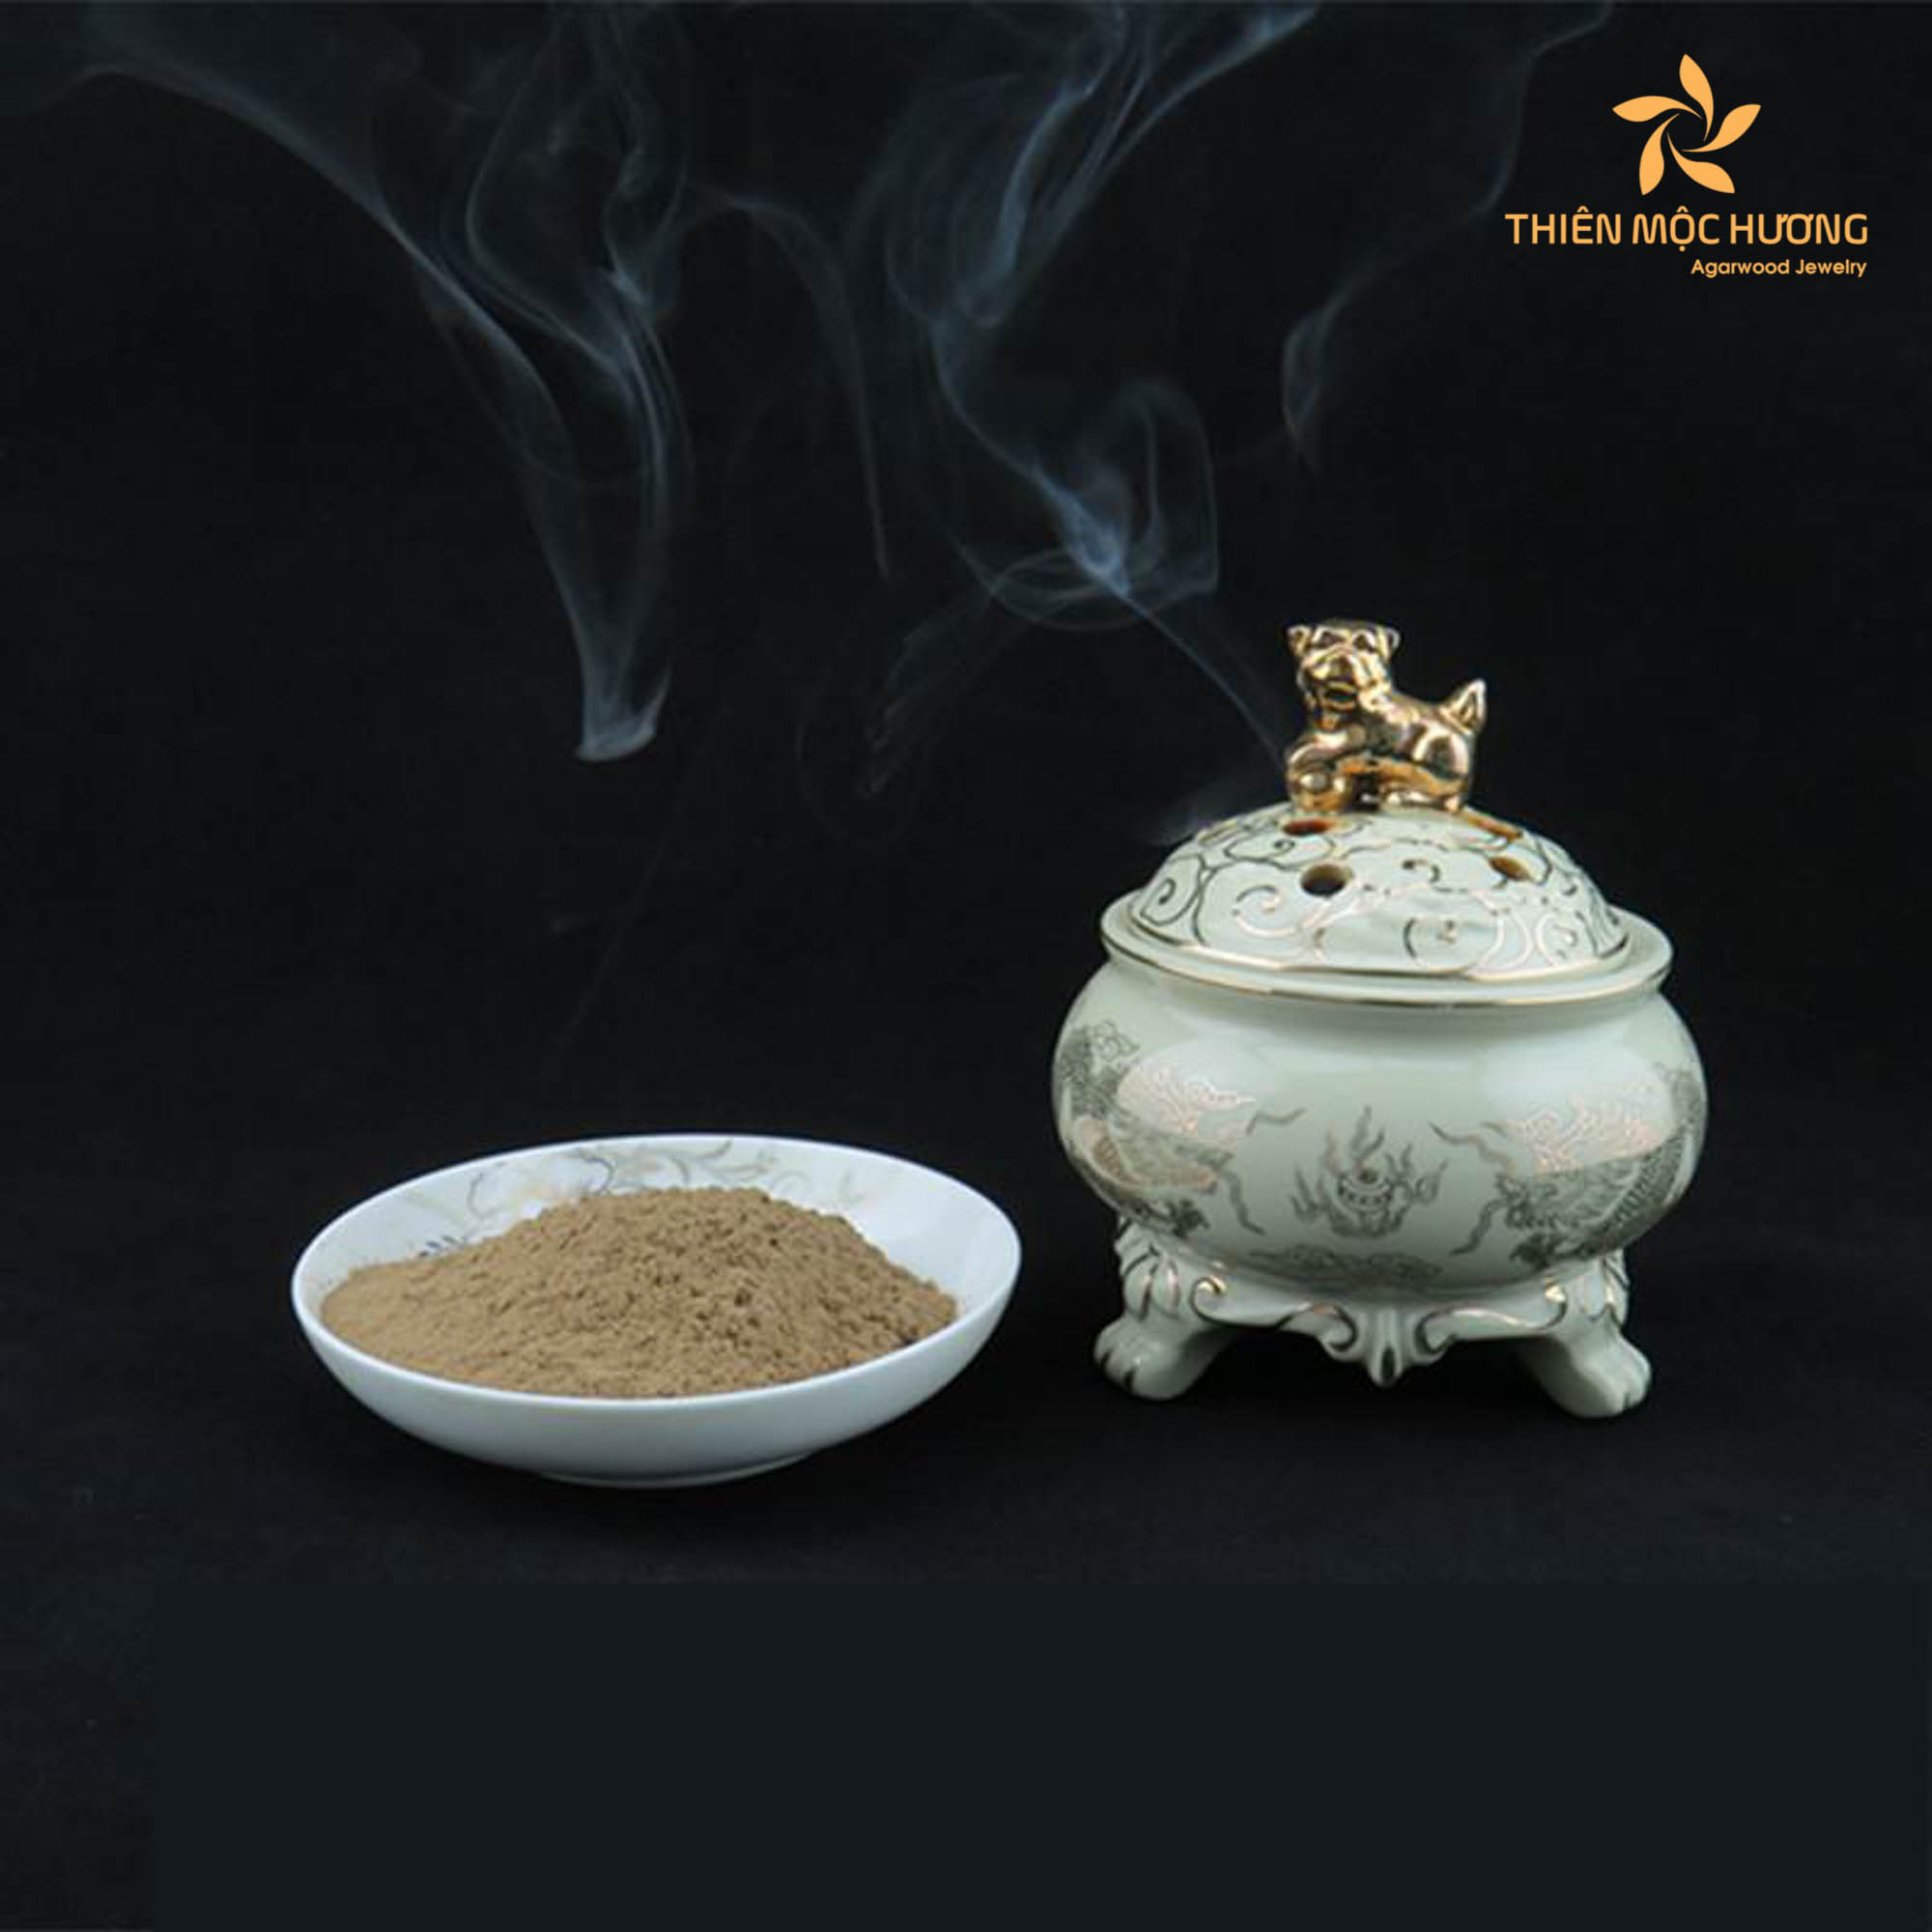 Agarwood powder for incense